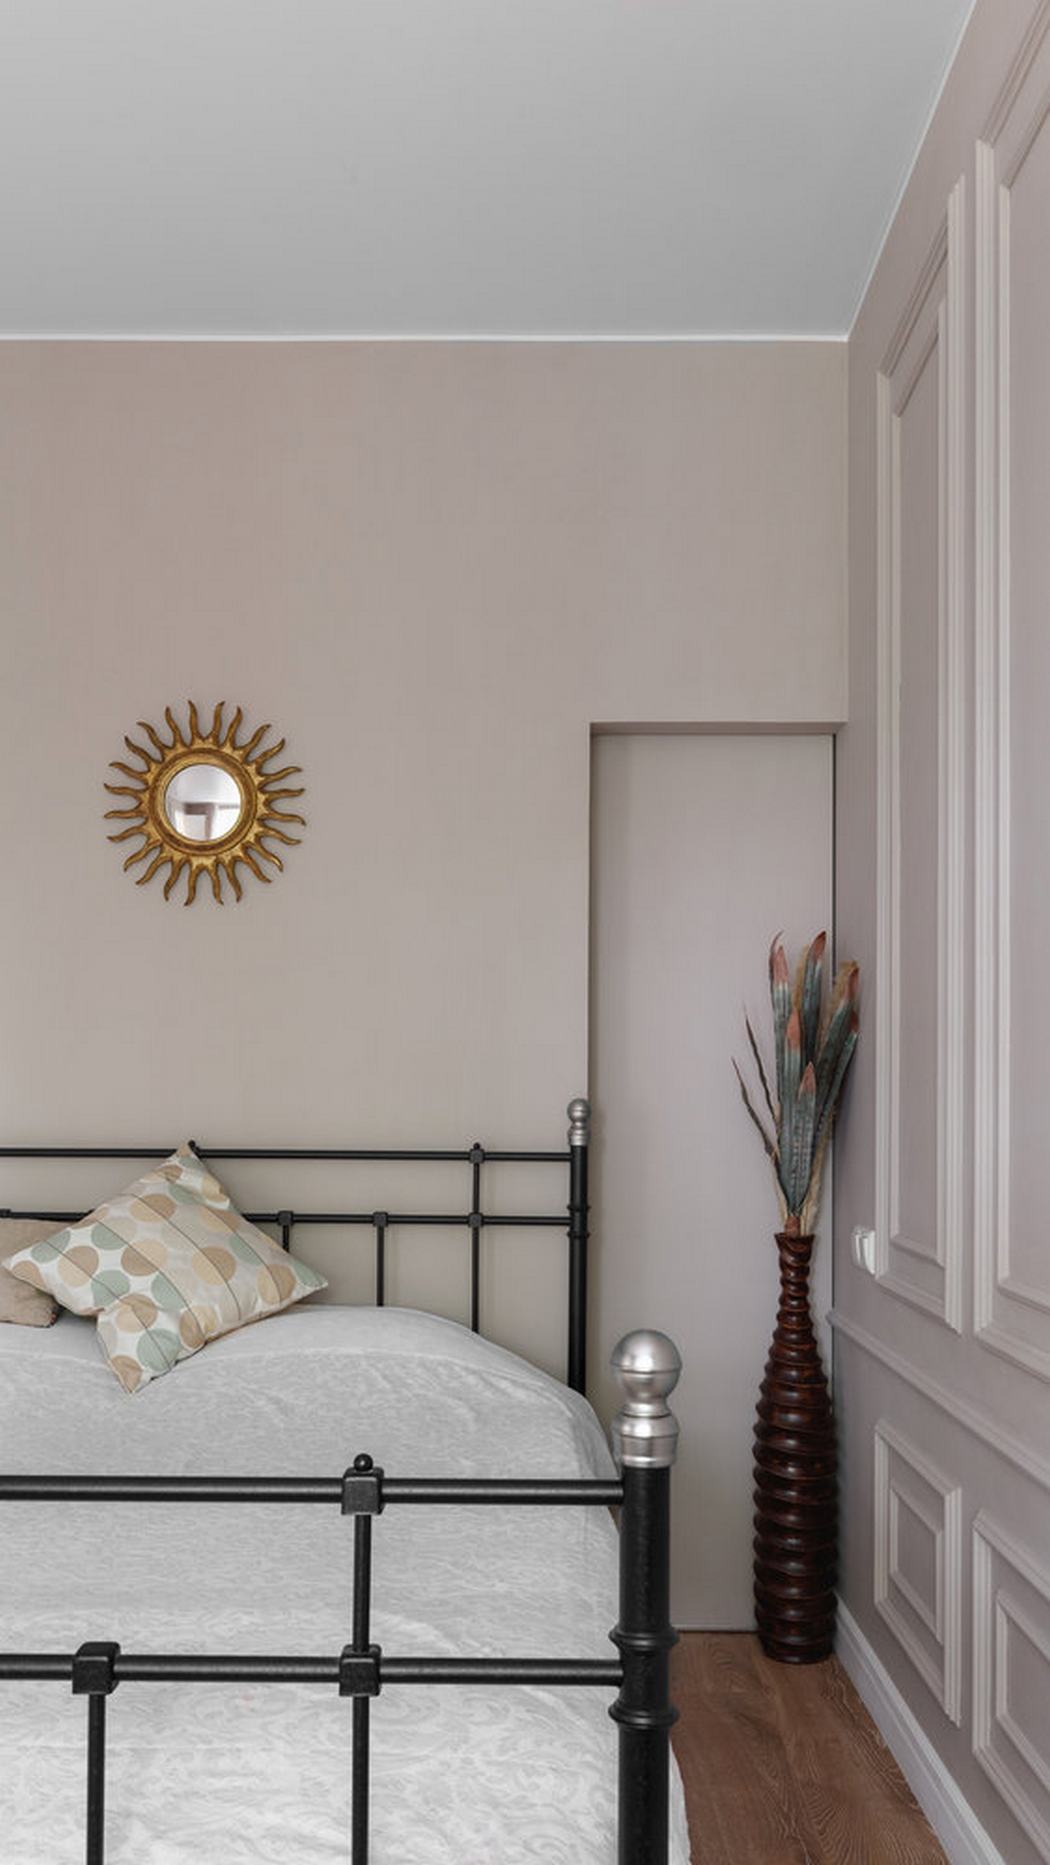 Phòng ngủ là khu vực cần sự thư giãn, yên tĩnh, vì thế nhà thiết kế nội thất đã lựa chọn gam màu be để sơn toàn bộ bức tường, trần nhà màu trắng, khung giường sơn đen và tấm gương tròn như một ông mặt trời nhỏ làm điểm nhấn.